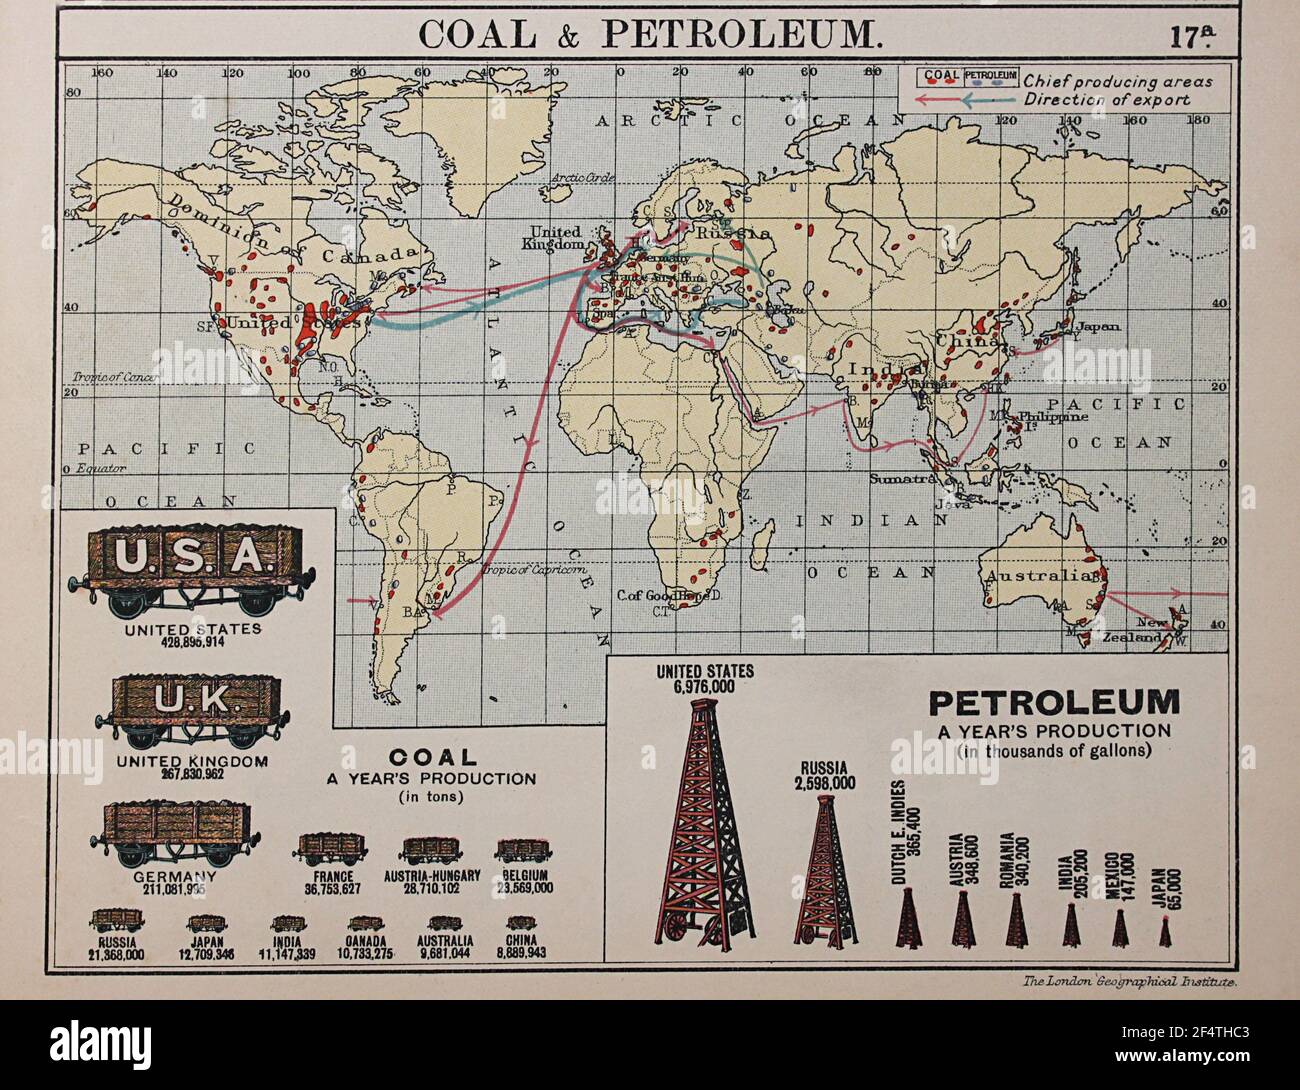 Weltkarte aus 'Philip's Chamber of Commerce Atlas', 1912, zeigt Kohle- und Erdölproduktion. Stockfoto